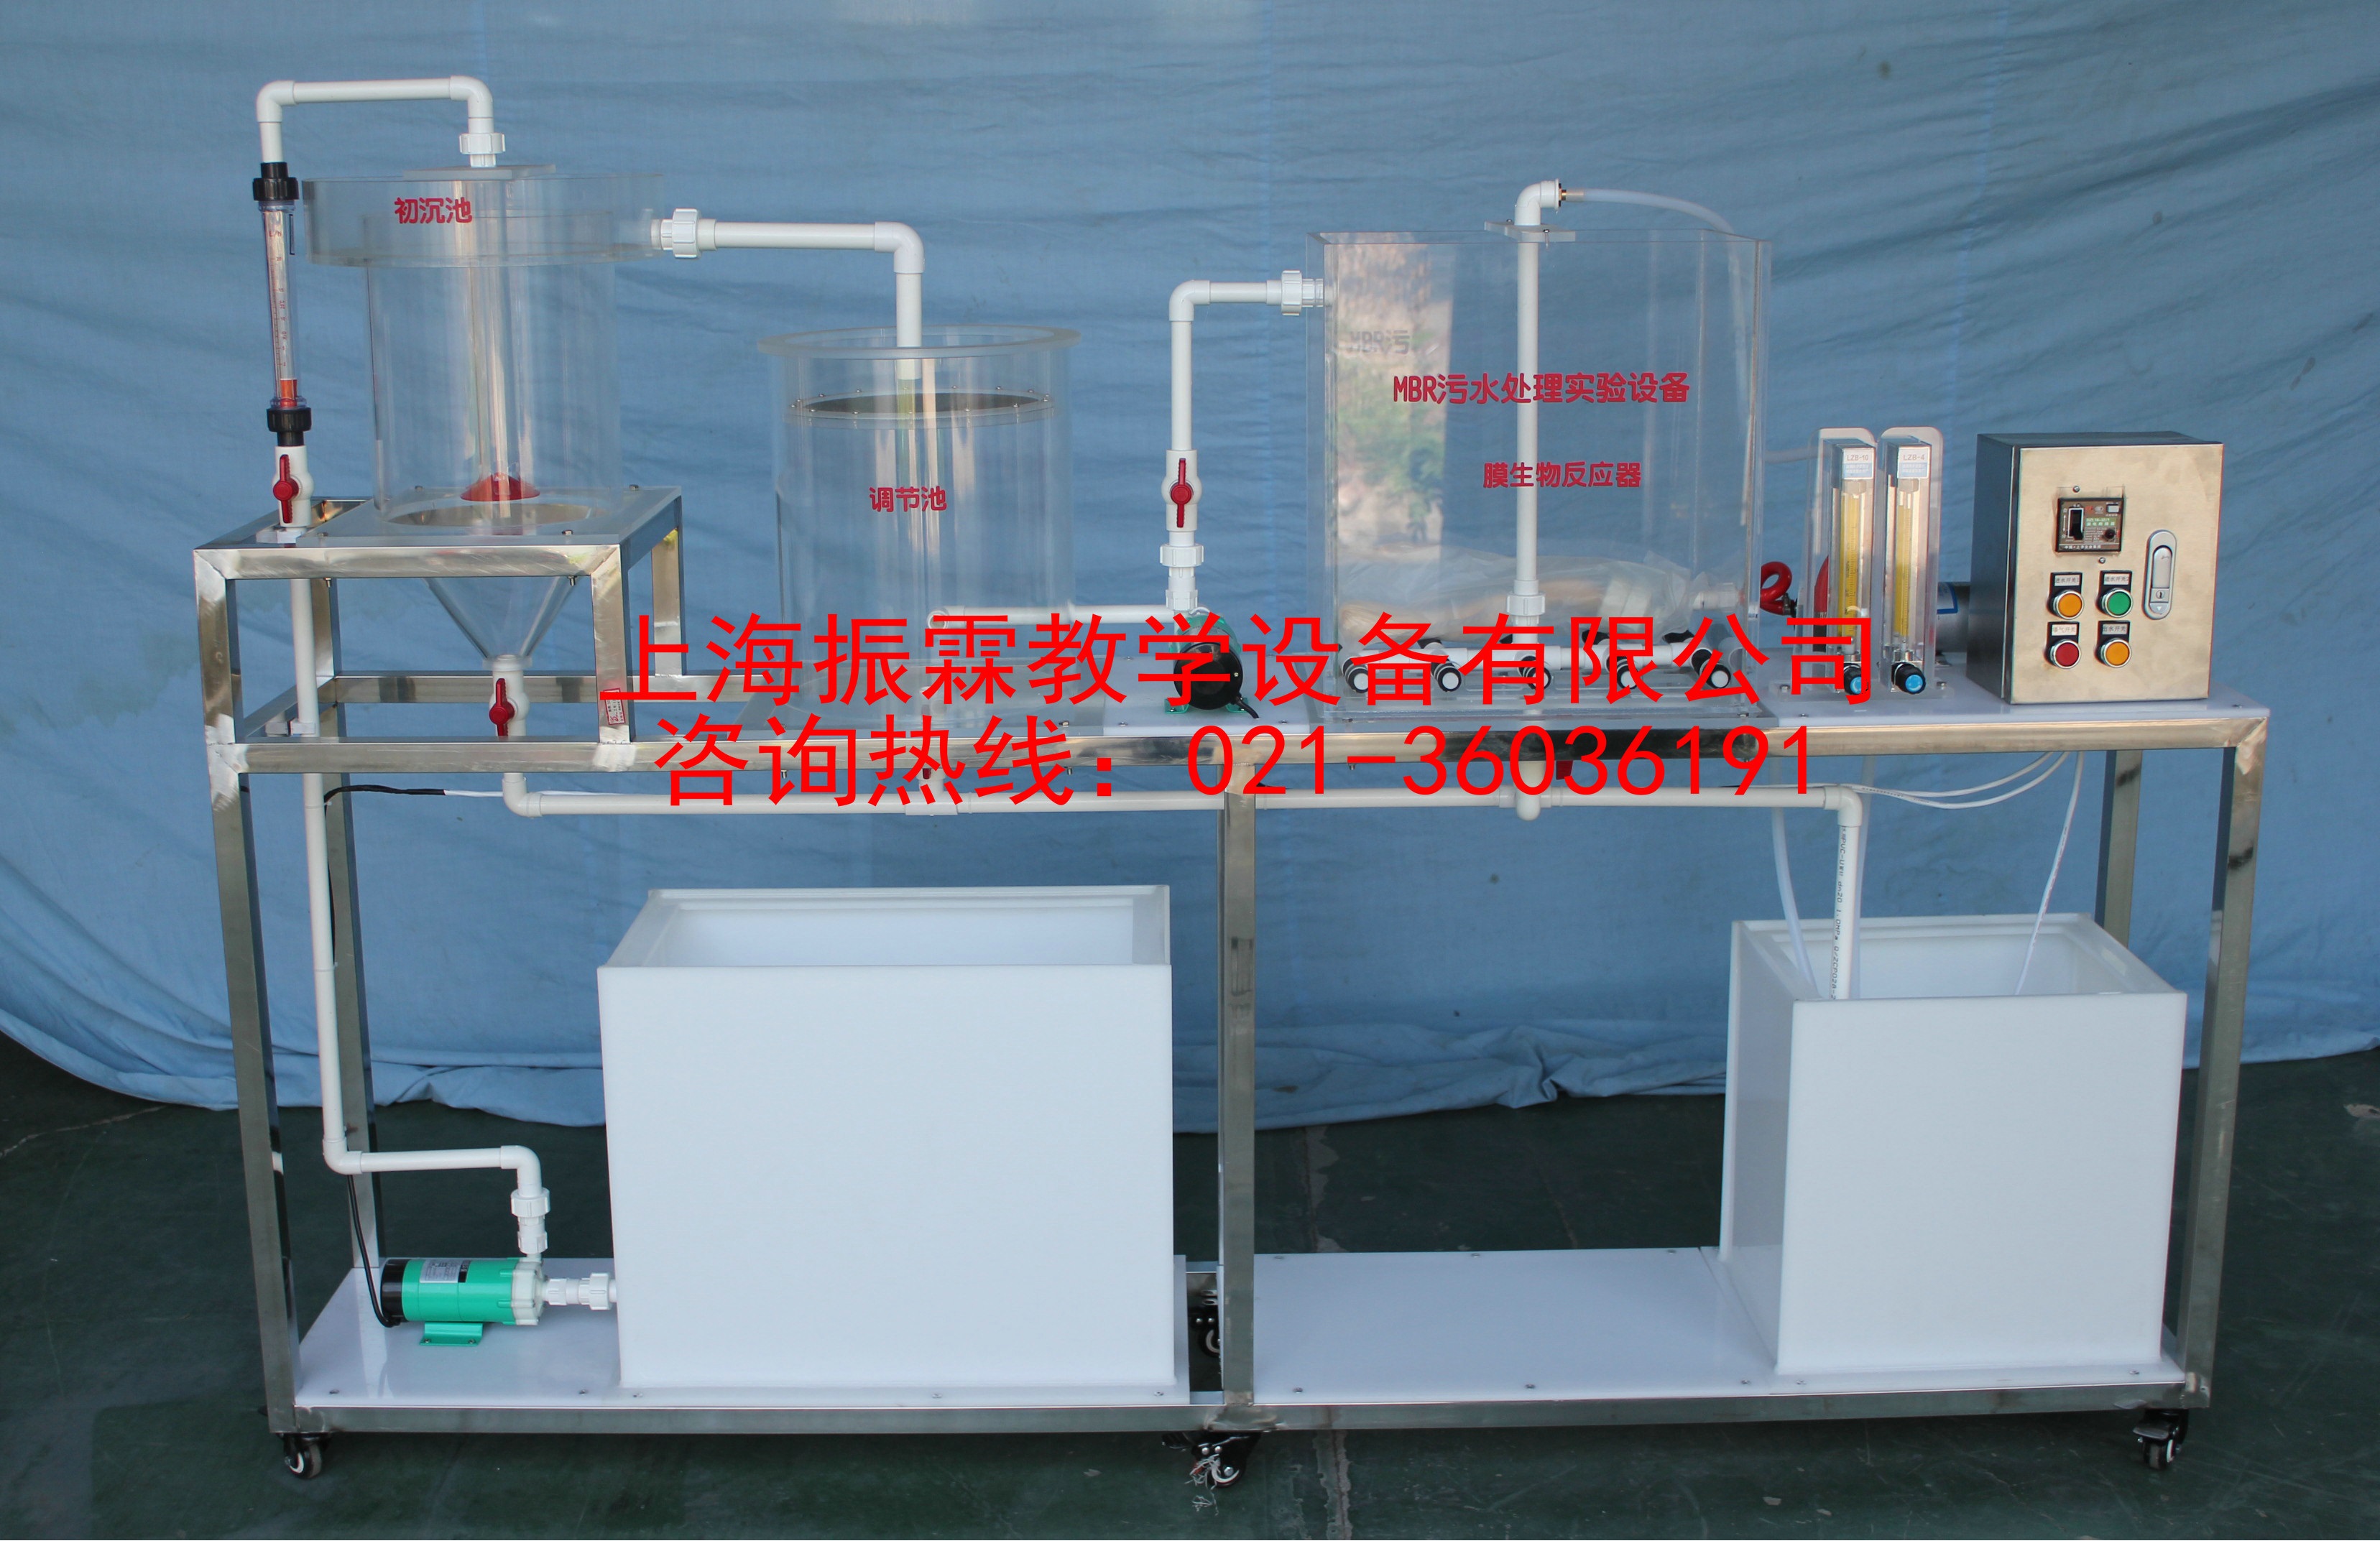 环境工程实训装置,MBR污水处理实验装置设备,污水处理实验设备--上海振霖教学设备有限公司